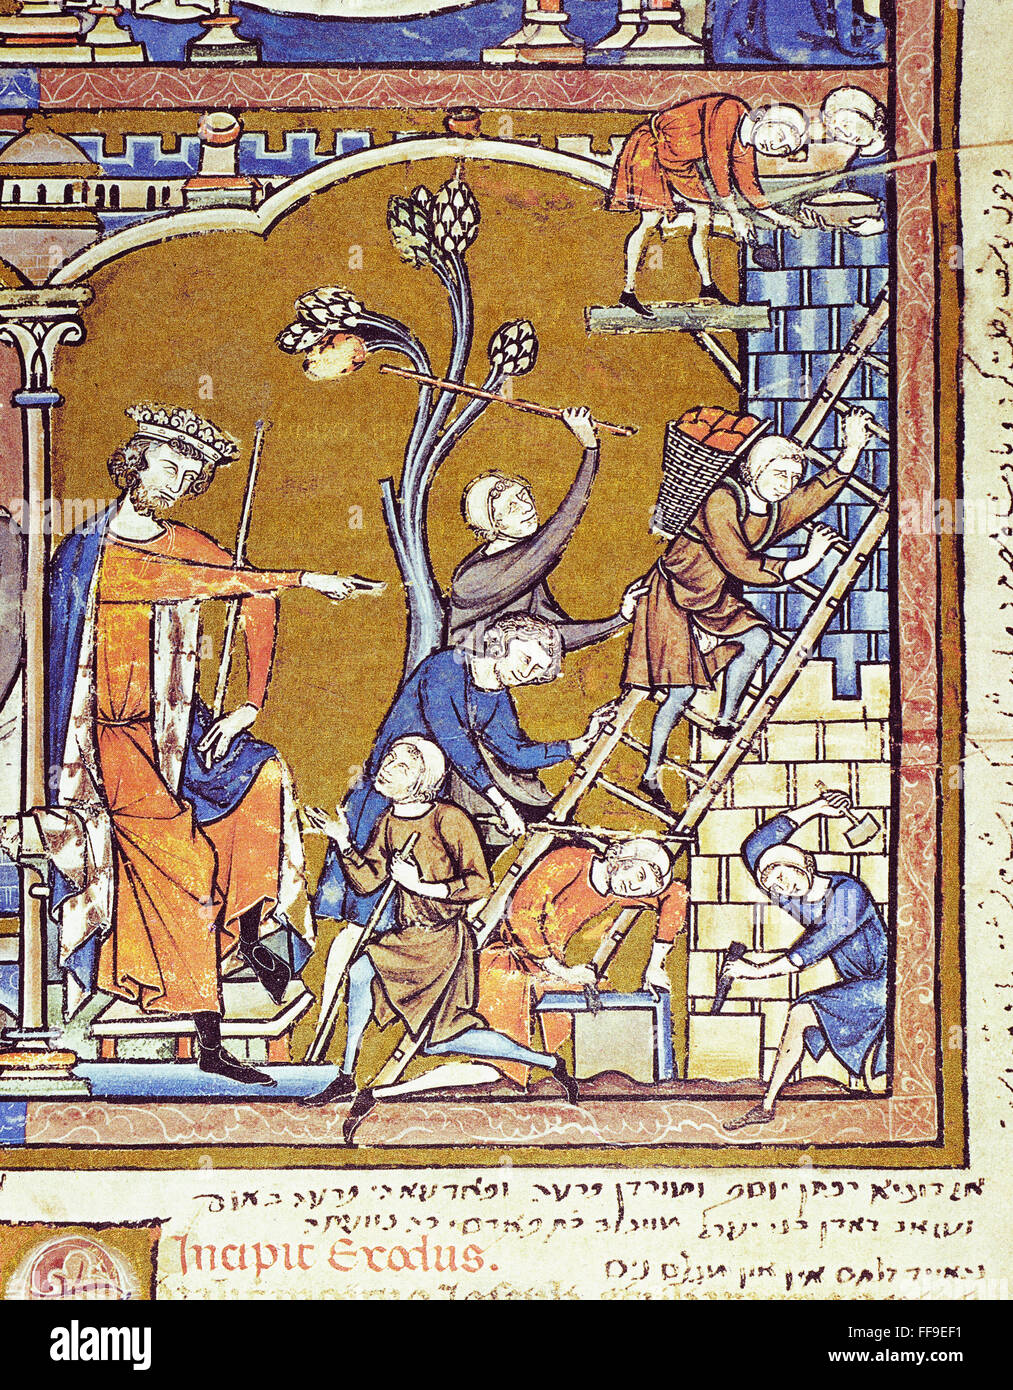 ISRAELITES OPPRESSED. /nA new pharoah oppresses the Children of Israel (Exodus 1: 8-11). French manuscript illumination, c1250. Stock Photo